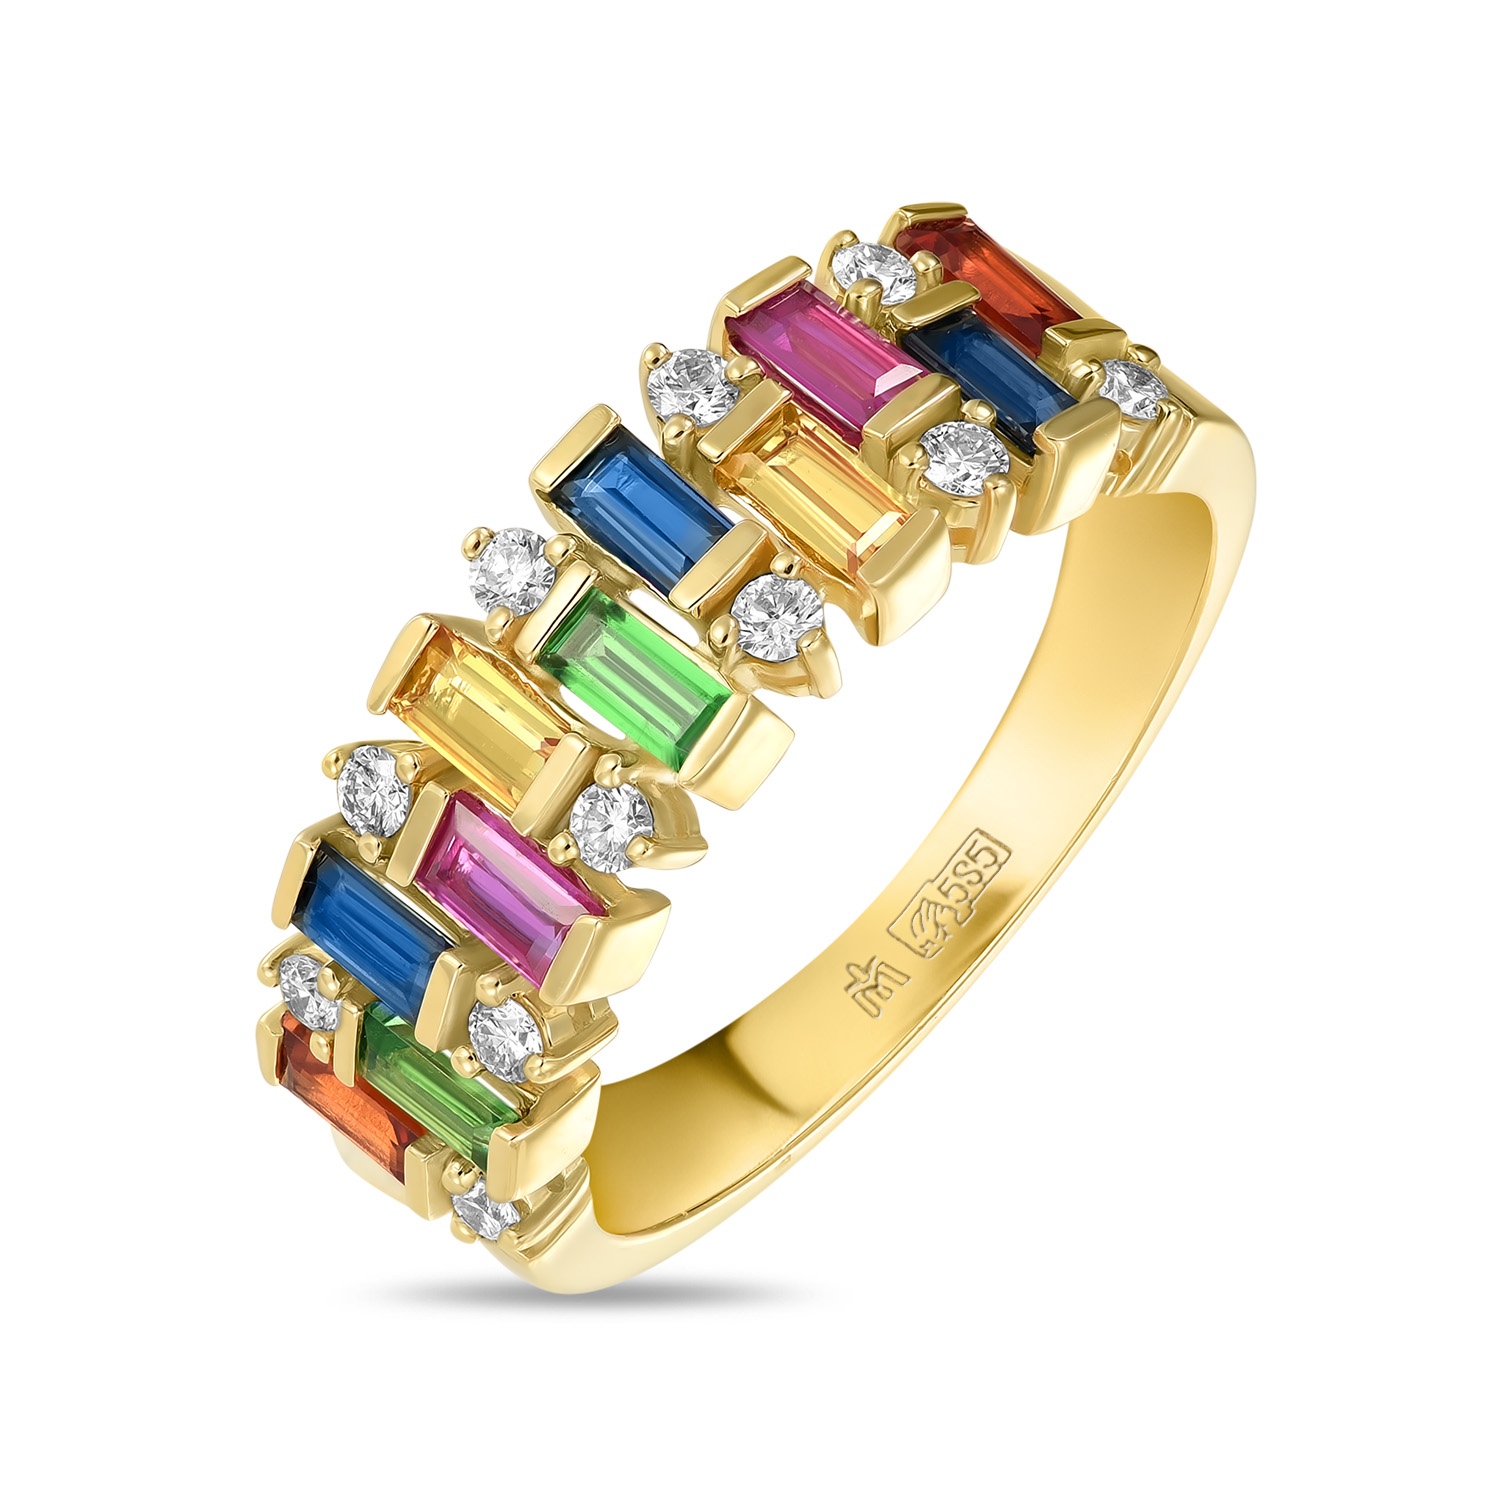 Кольца МЮЗ Кольцо с бриллиантами, гранатами, сапфирами и цветными сапфирами кольца мюз золотое кольцо с бриллиантами гранатами и цветными сапфирами